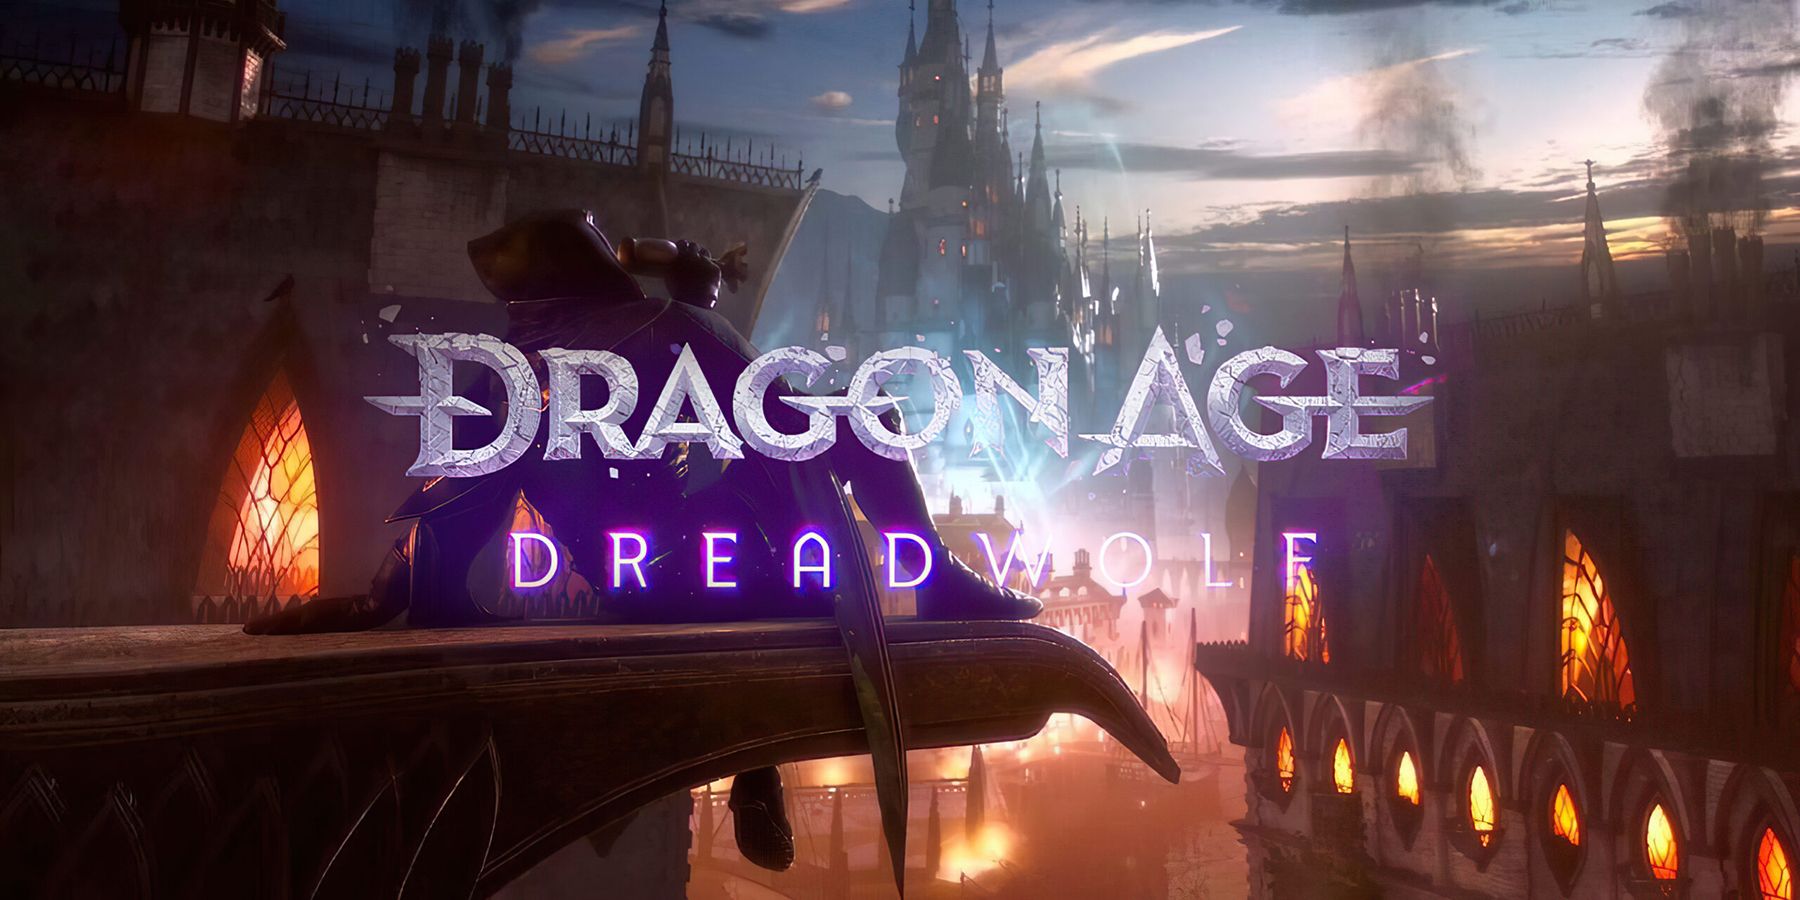 Dragon-Age-Dreadwolf-Minrathous-Tevinter